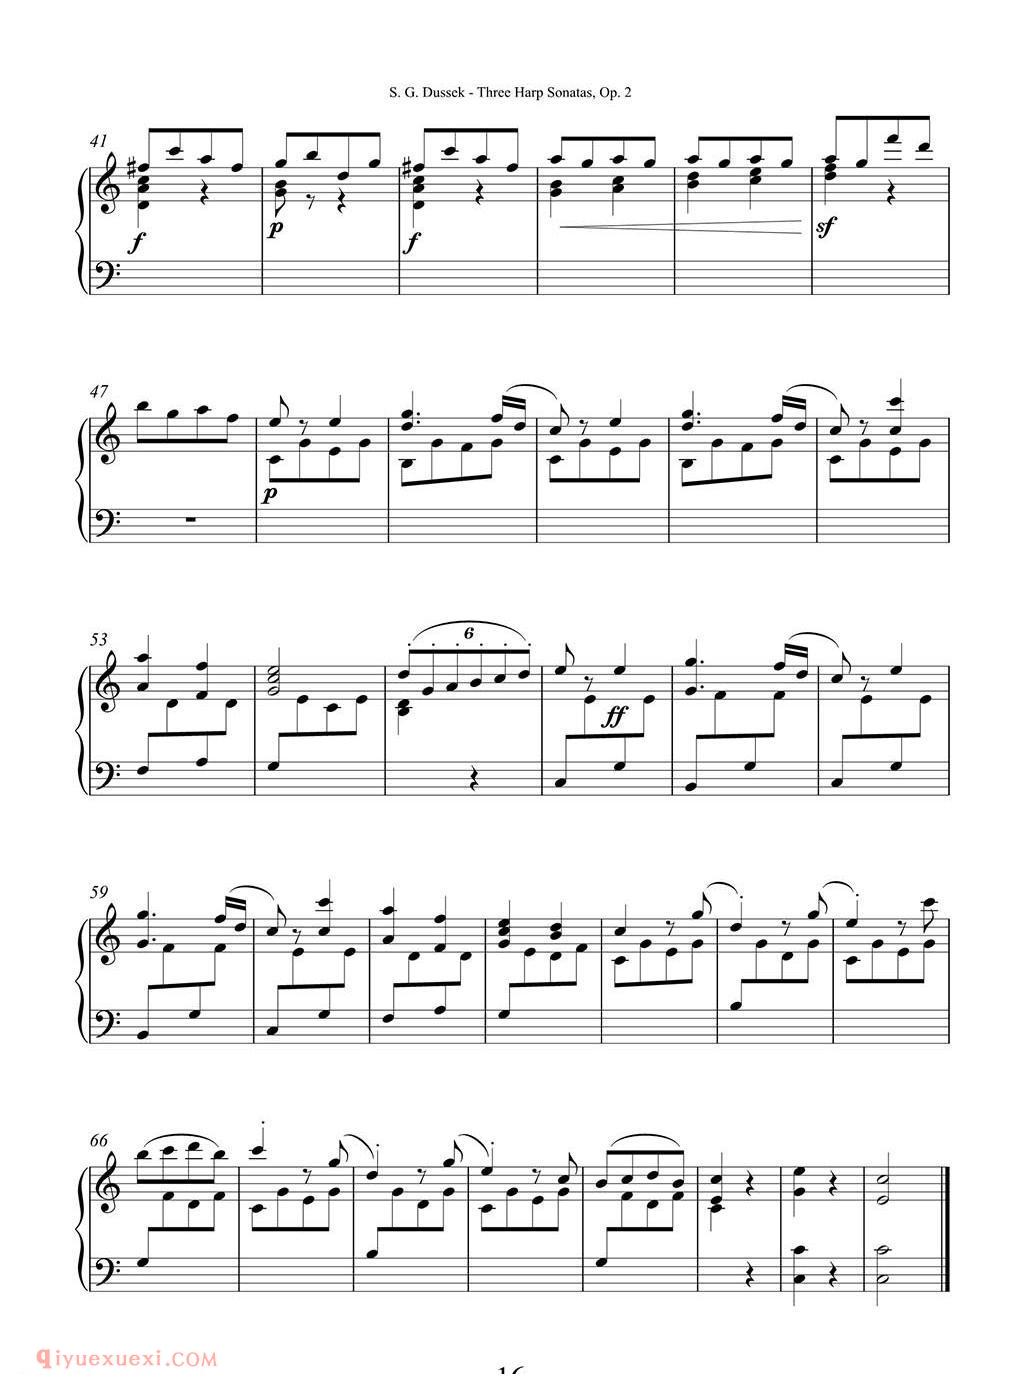 杜塞克三首竖琴奏鸣曲 Op.2 No.2/Dussek Three Harp Sonatas Op. 2 No.2